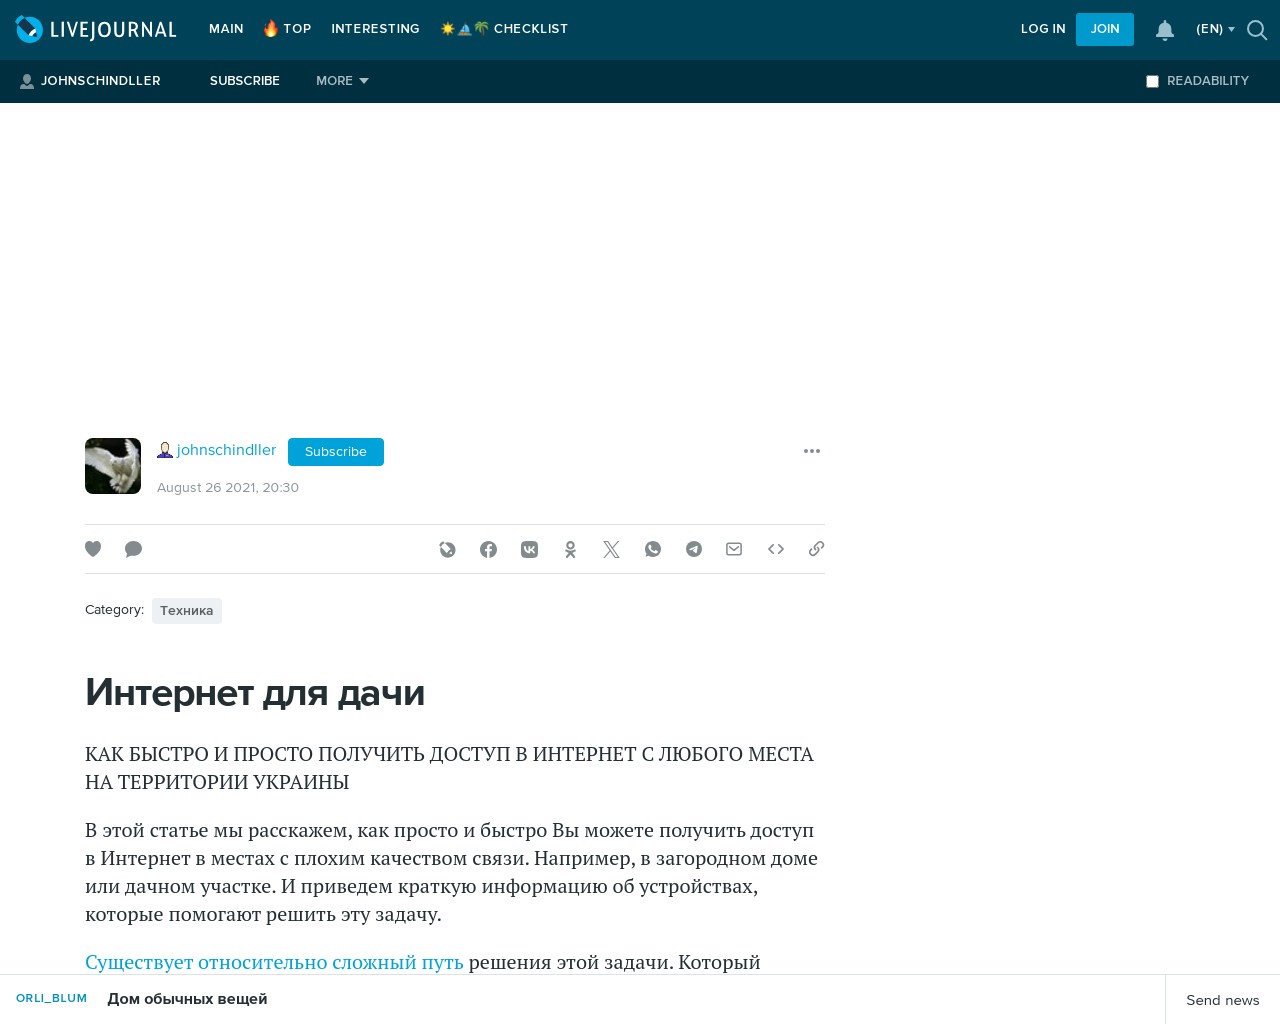 Картинка скриншота сайта - Интернет для дачи. Как быстро и просто получить доступ в Интернет с любого места в Украине?